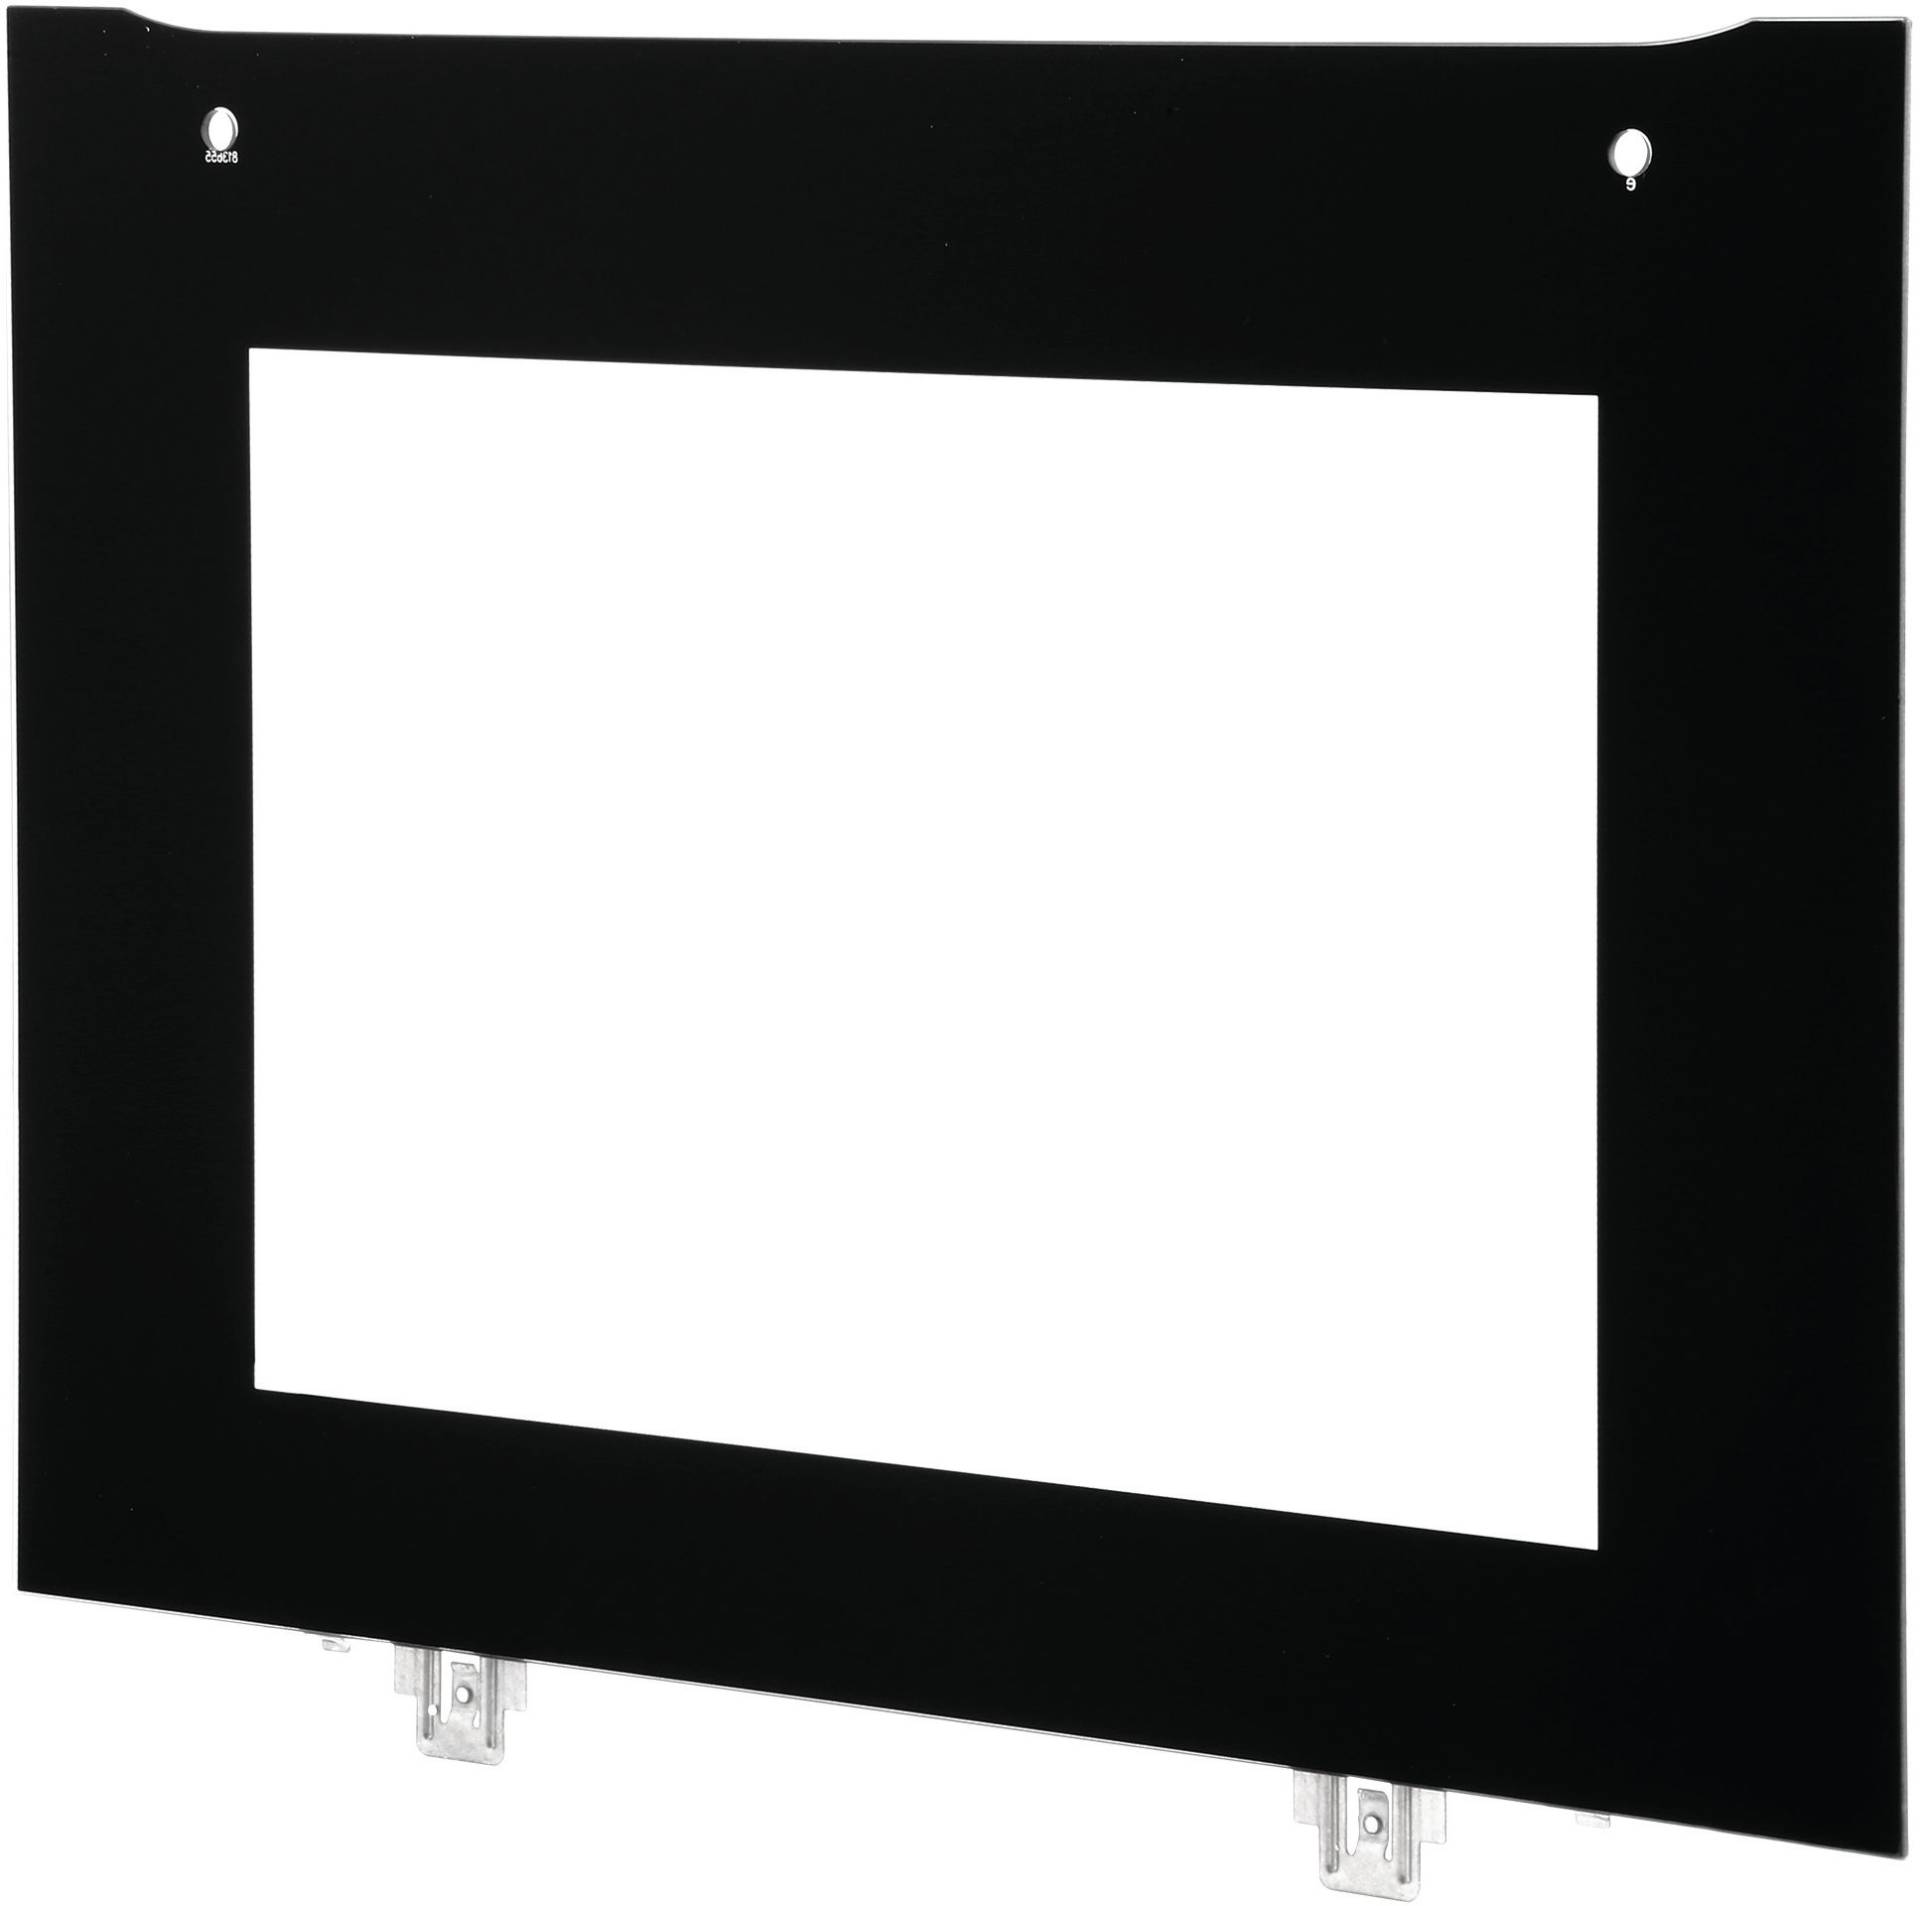 Frontglasscheibe für Frontglasscheiben mit Metallapplikationen unten für Geräte mit Mikrowellenfunktion (BD-00772607) von BSH